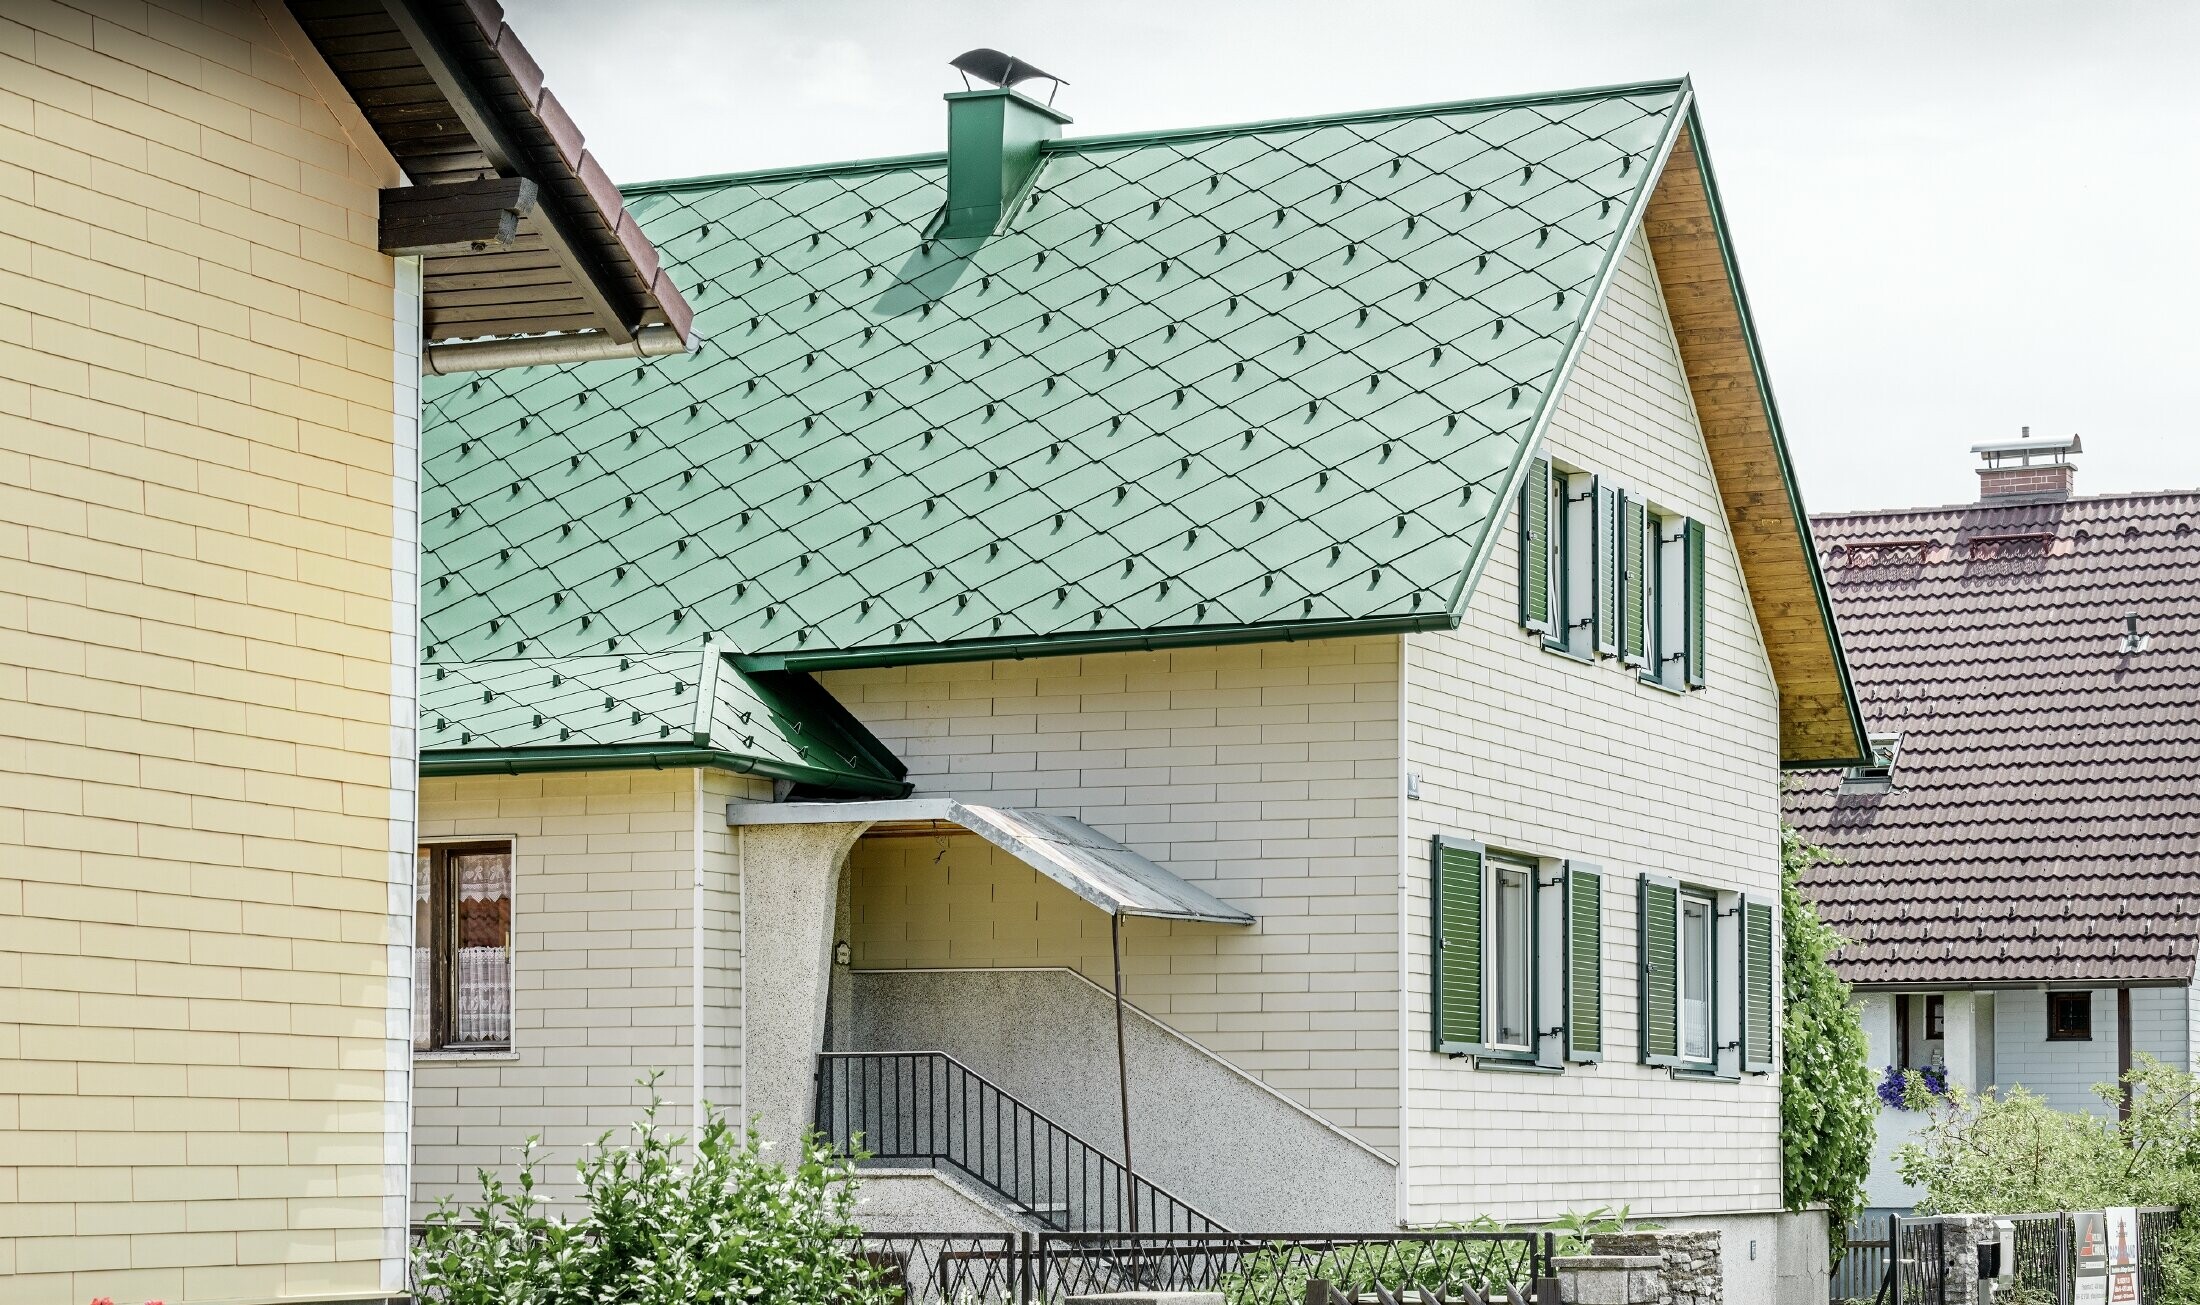 Klassiskt enfamiljshus med ett mossgrönt sadeltak i aluminium och gröna fönsterluckor